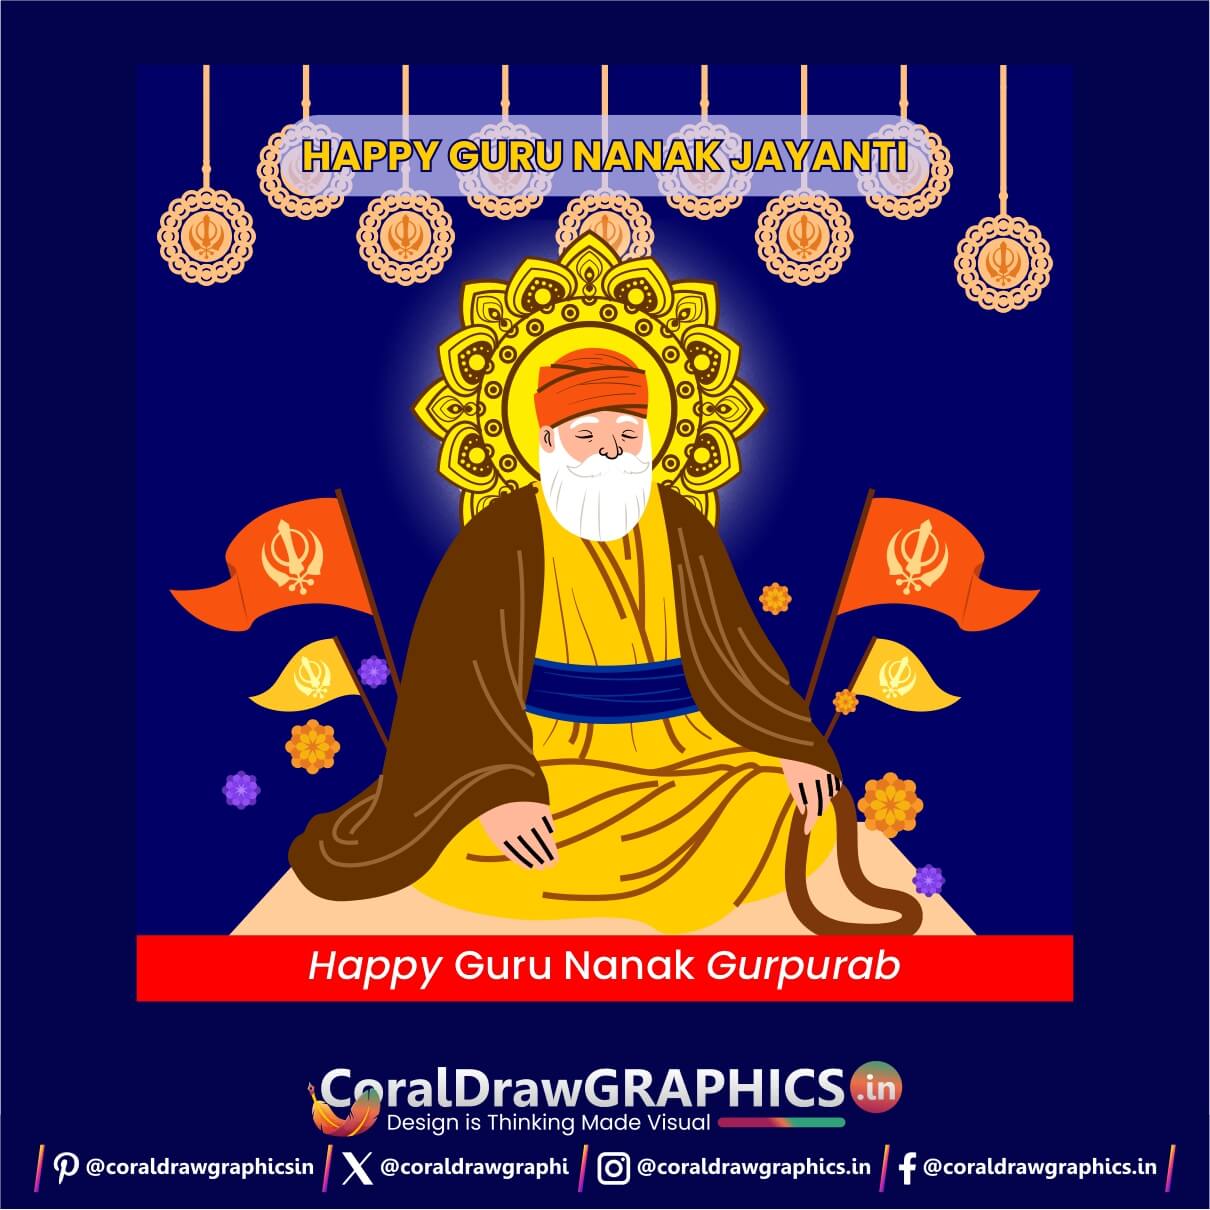 Guru Nanak Jayanti GuruParab Social Post Free Templates